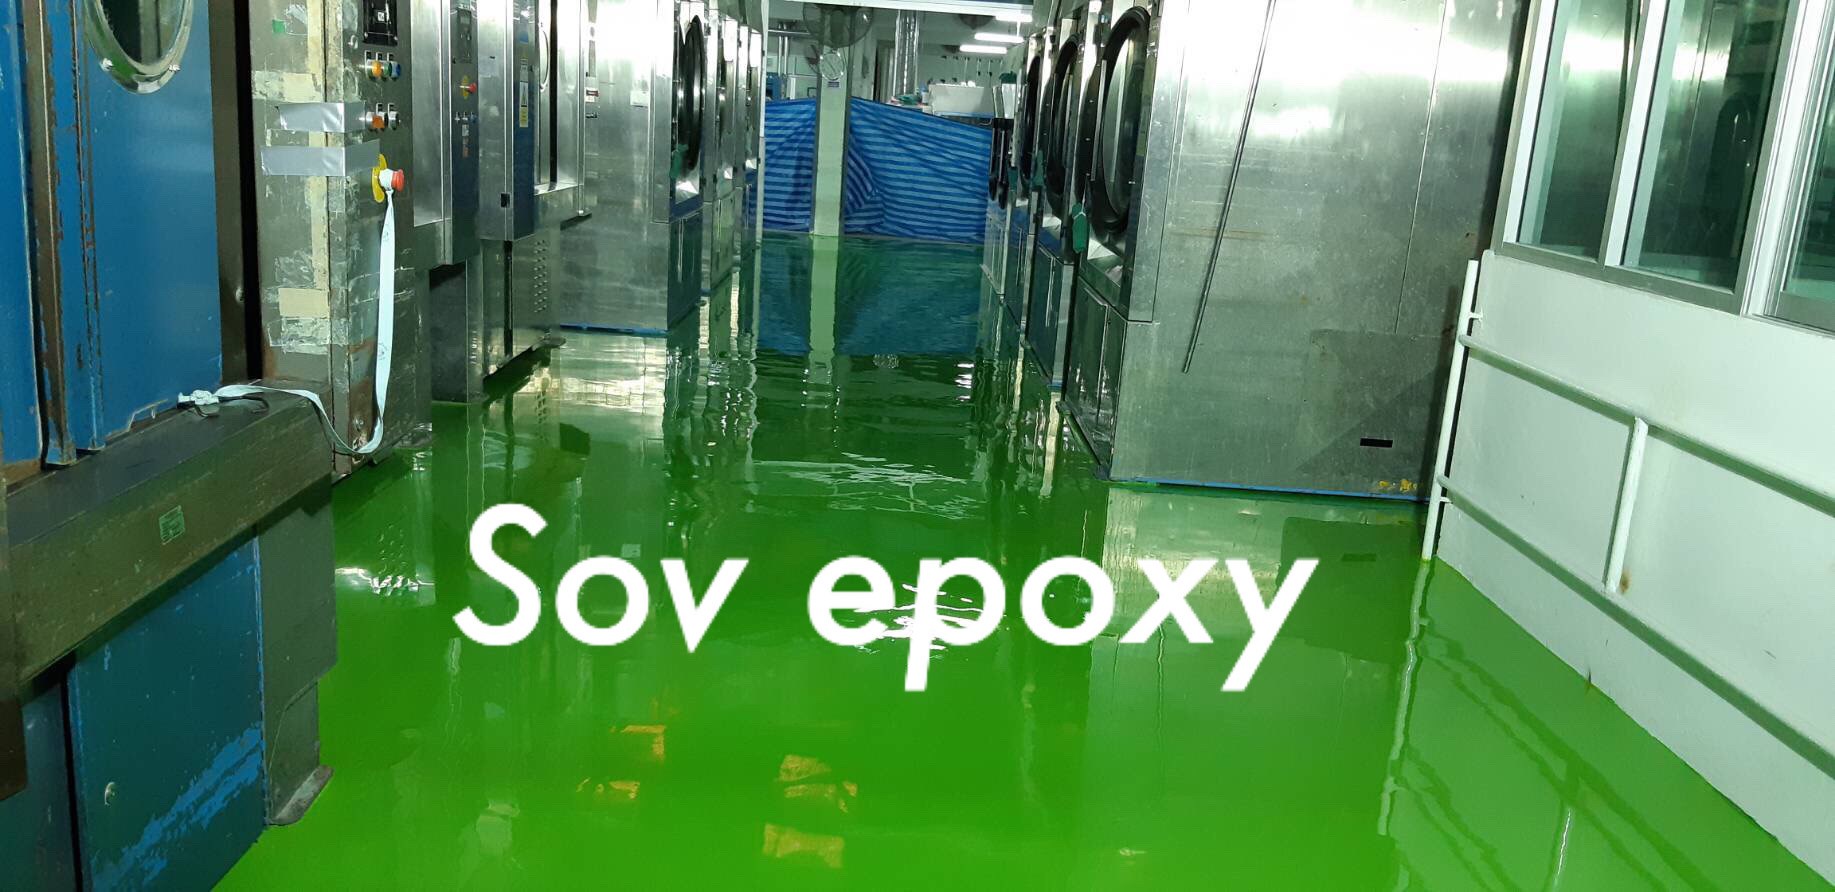 Sov Epoxy ทำพื้นอีพ็อกซี่ พื้นพียู พื้นโรงงาน พื้นสนามกีฬา 9